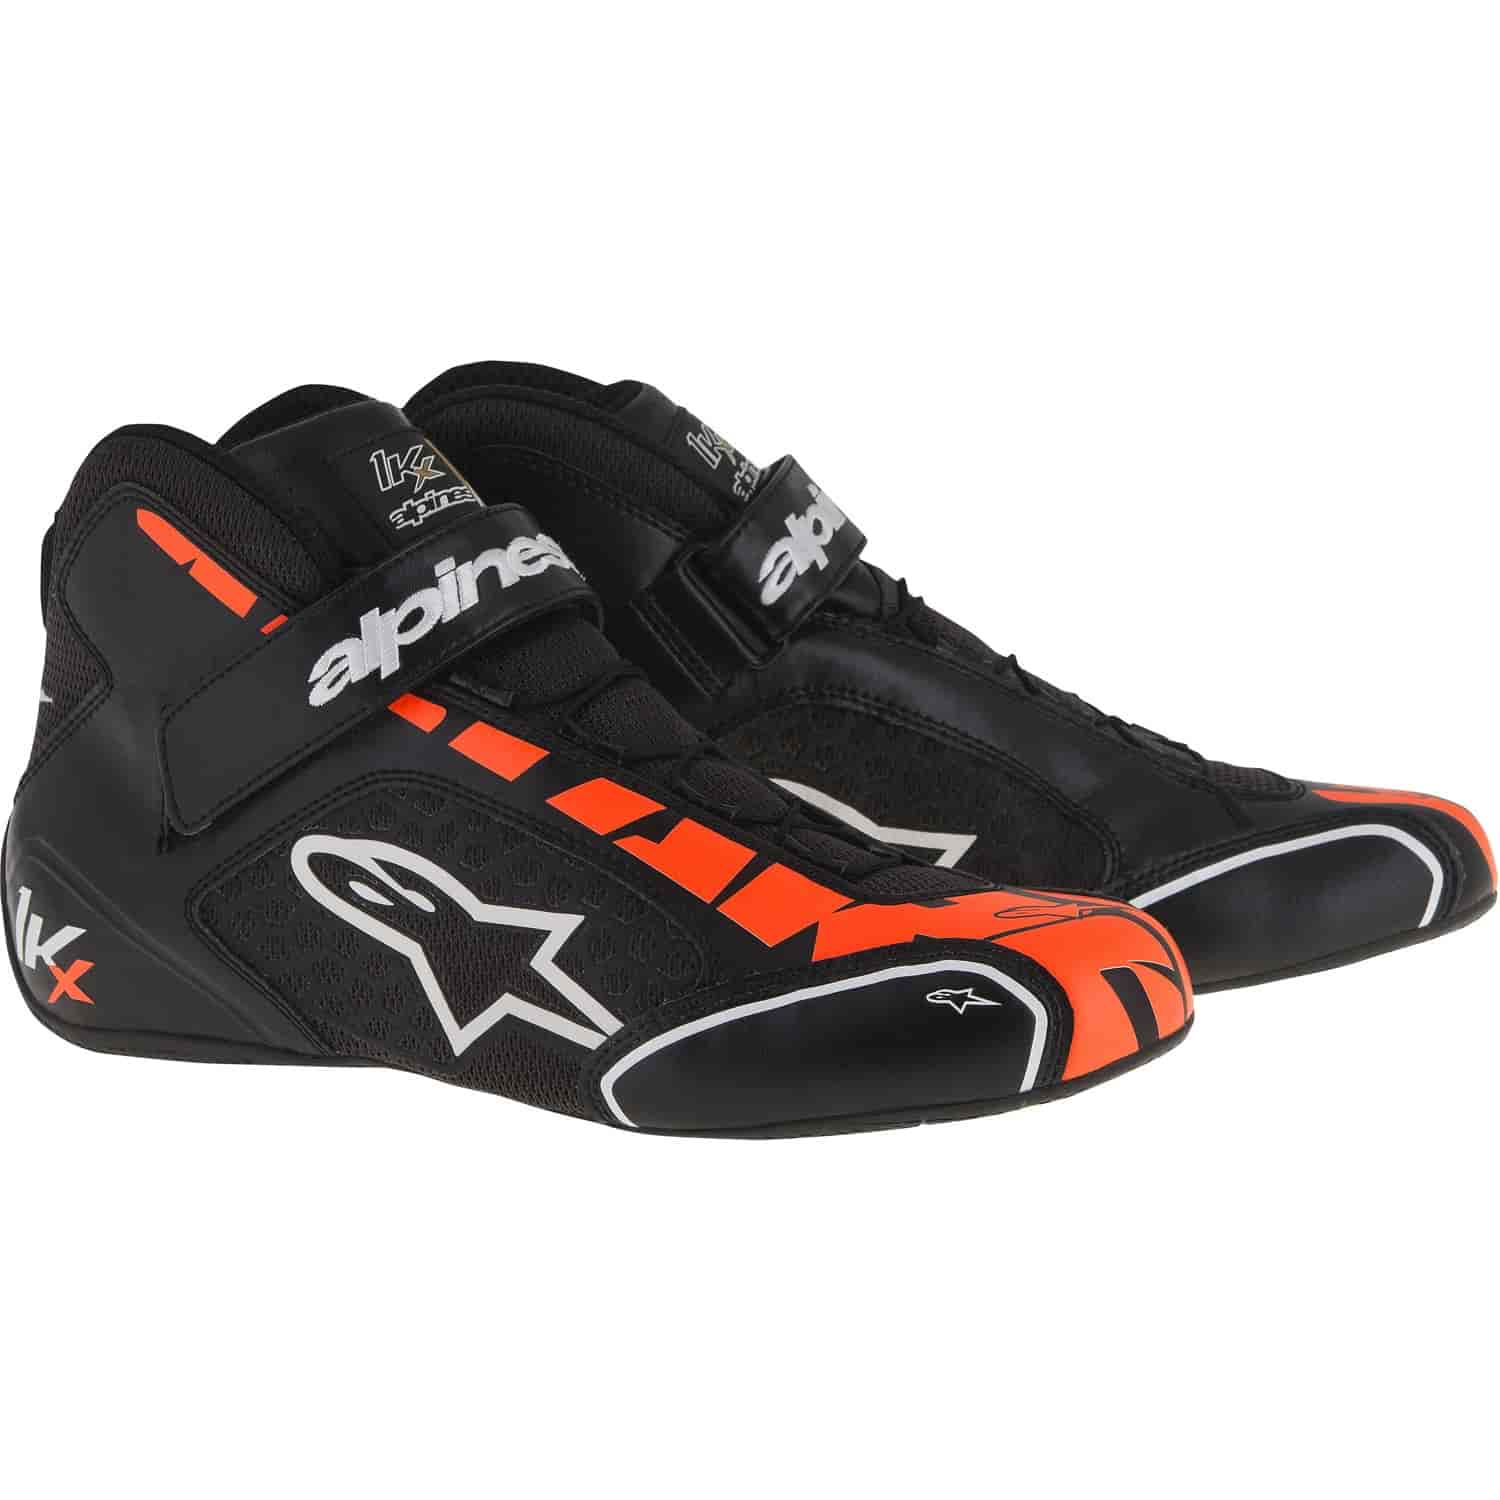 Tech 1-KX Shoes Black/Orange Fluorescent